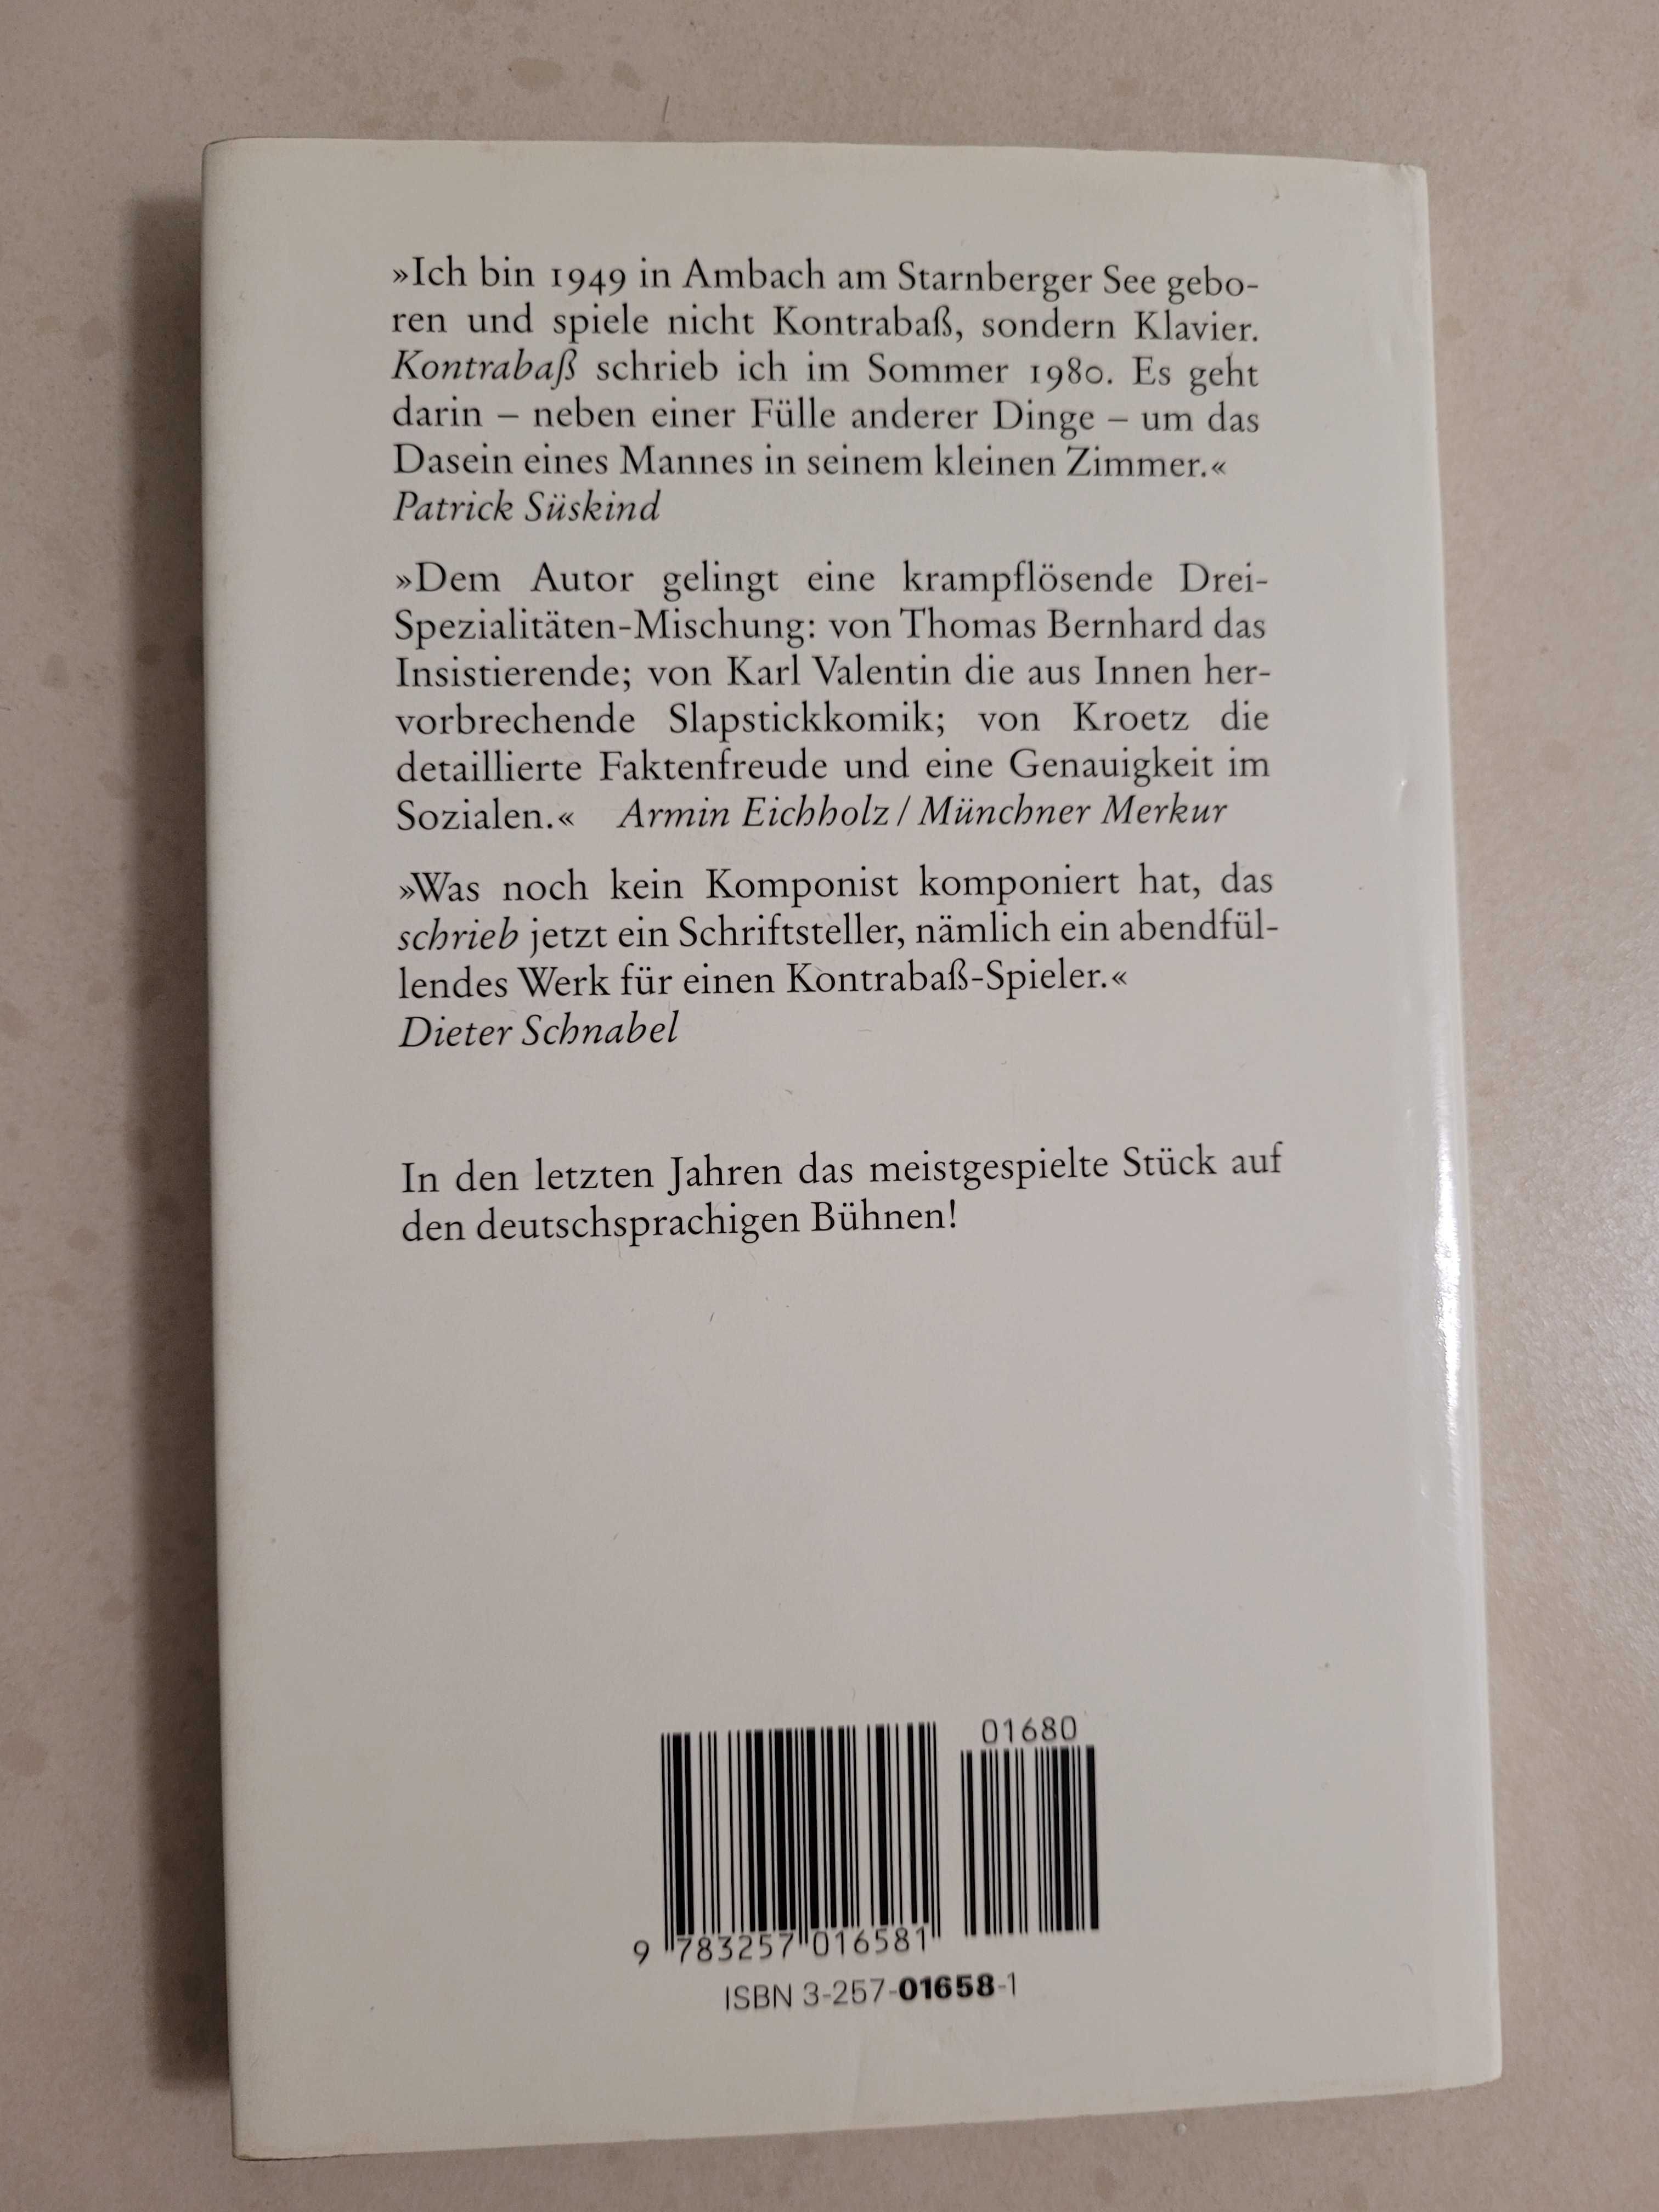 Książka niemieckojęzyczna "Der Kontrabass"